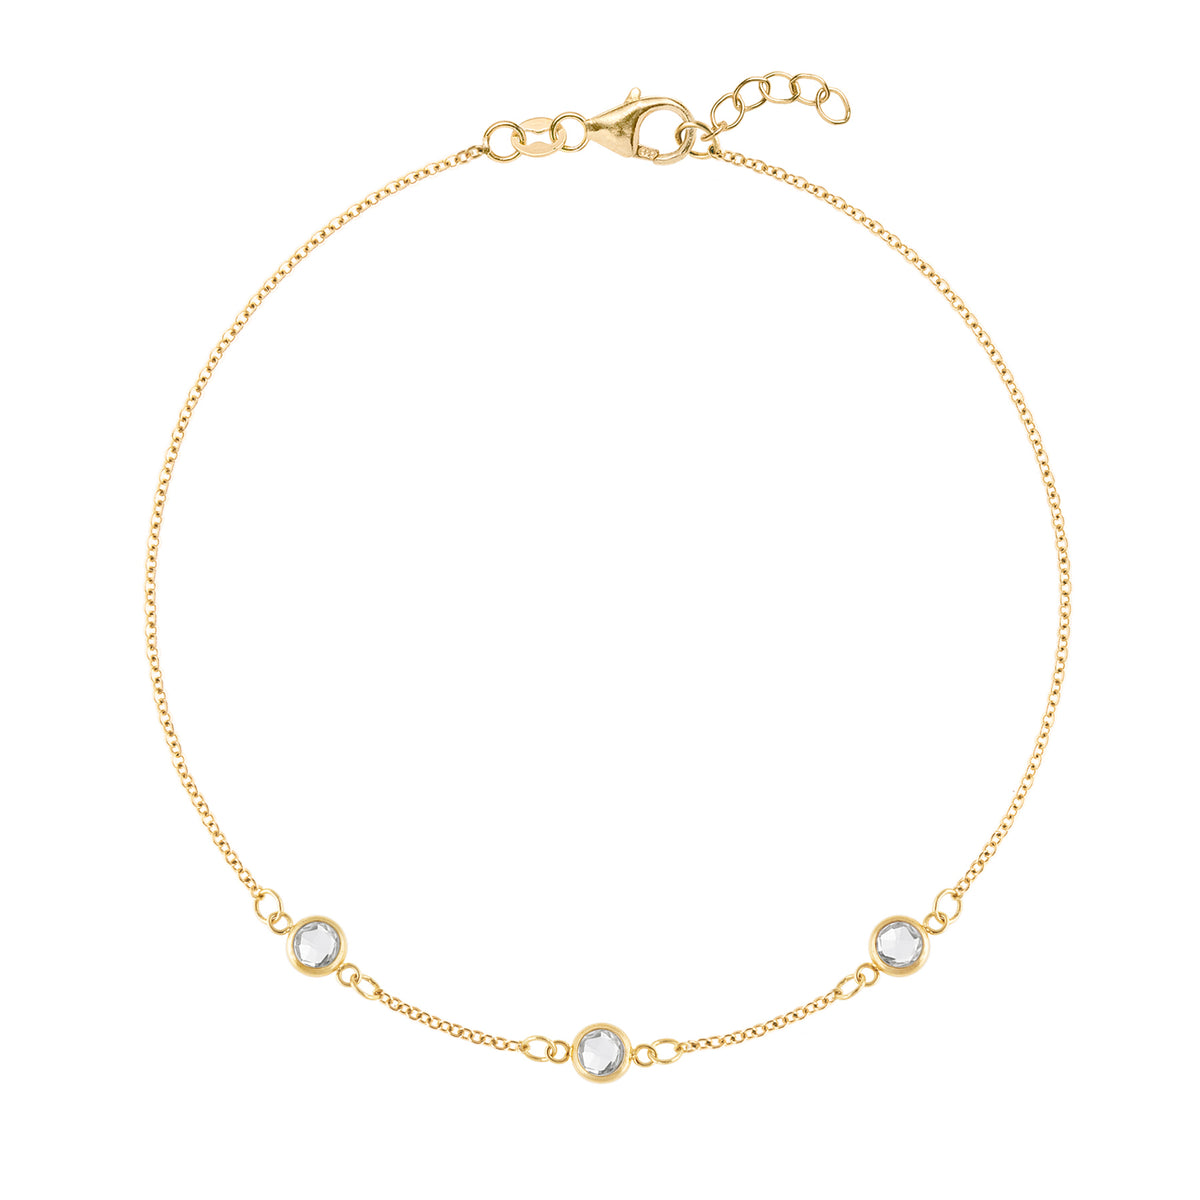 Birthstone Tennis Bracelet – Amanda Deer Jewelry